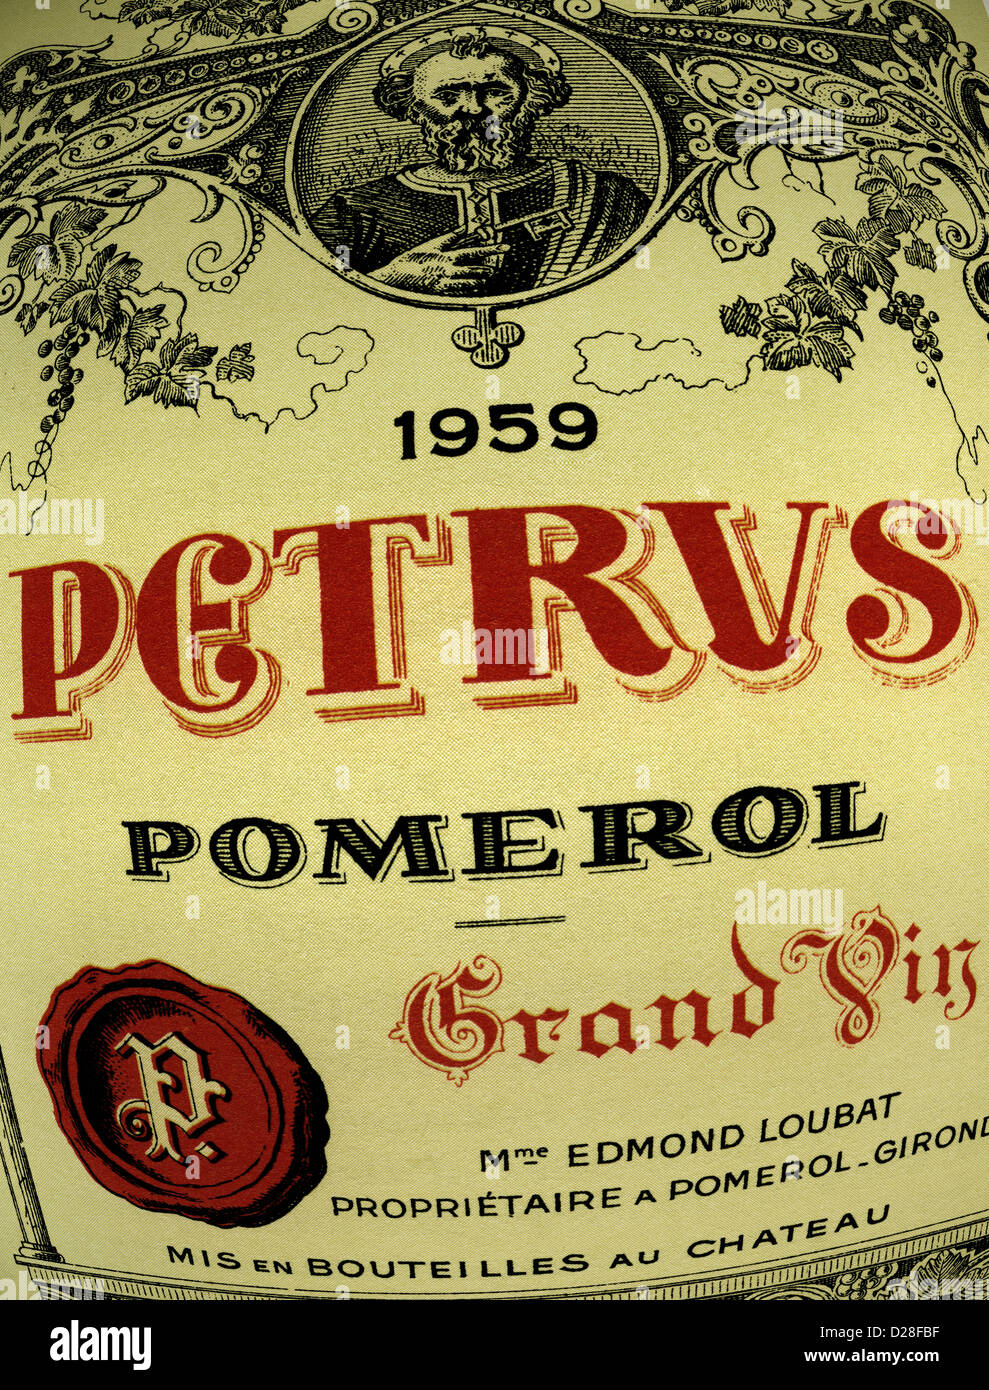 Etichetta della bottiglia DI PETRUS dell'anno 1959 Chateau Petrus Pomerol Grand Vin vino rosso Bordeaux Francia Foto Stock